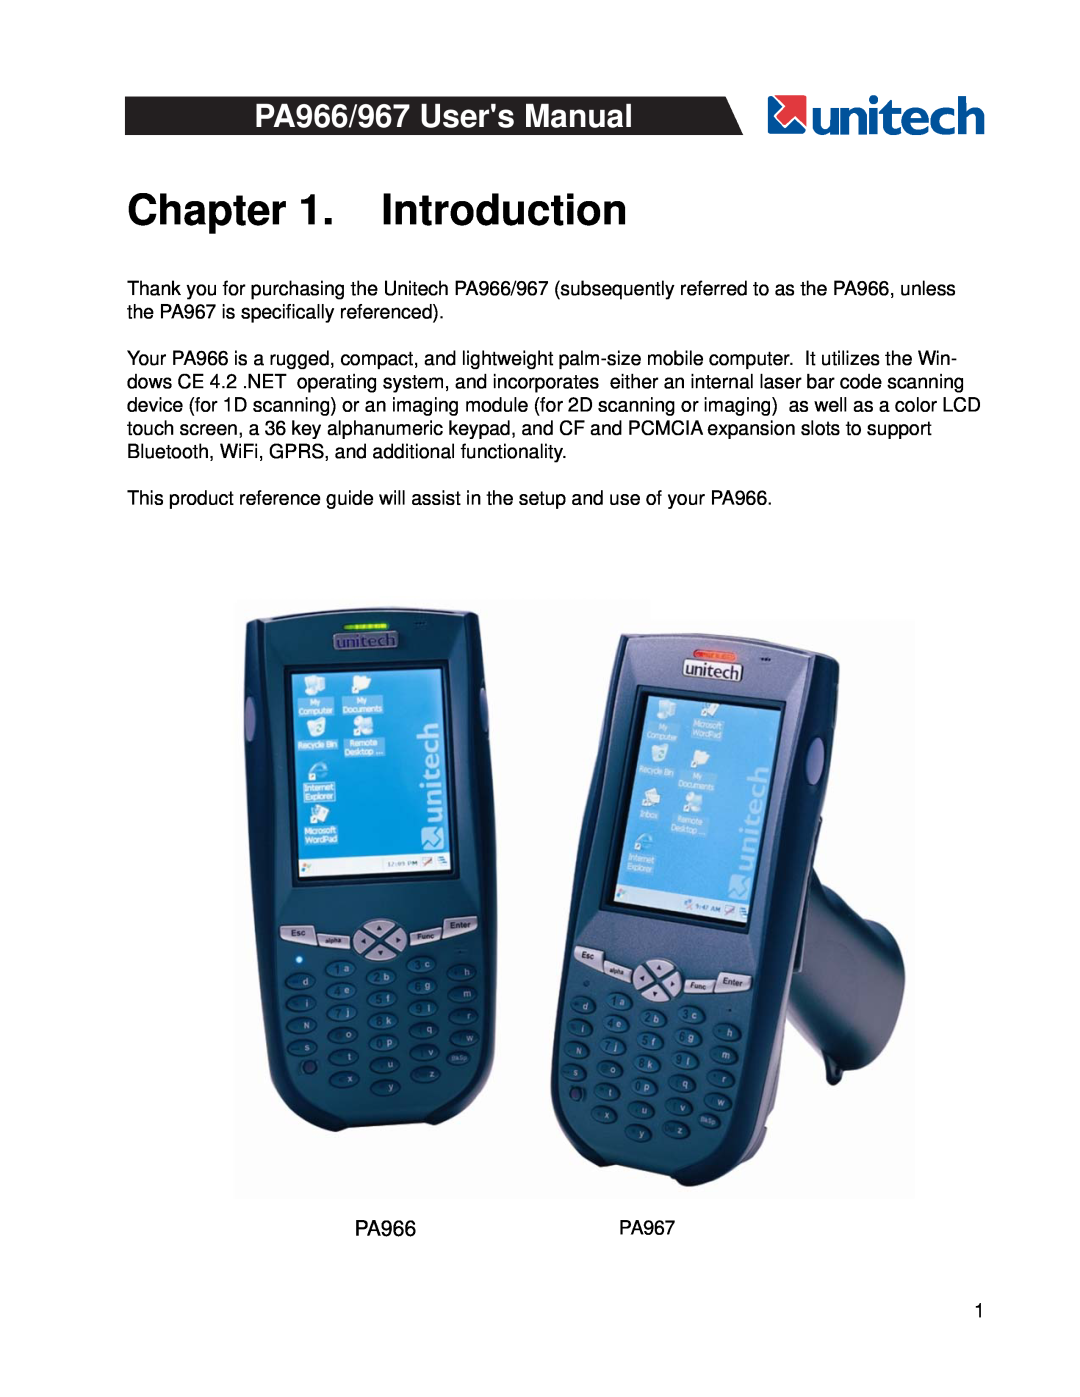 Unitech user manual Introduction, PA966PA967 